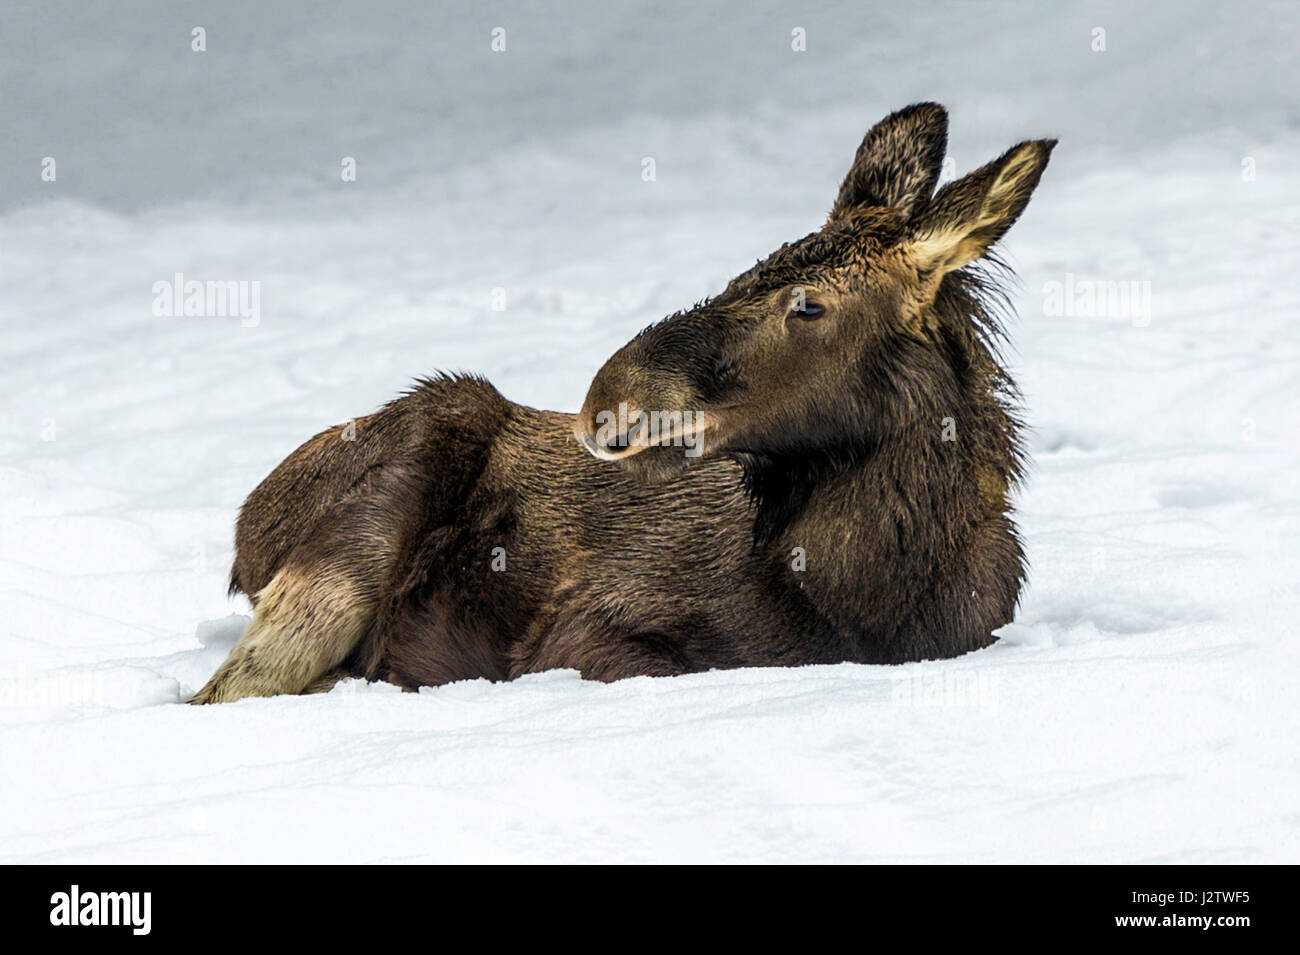 Hermosa Euroasiática juvenil / Elk (Alces alces alces) representada sentada en un Snow Drift a mediados de invierno Foto de stock